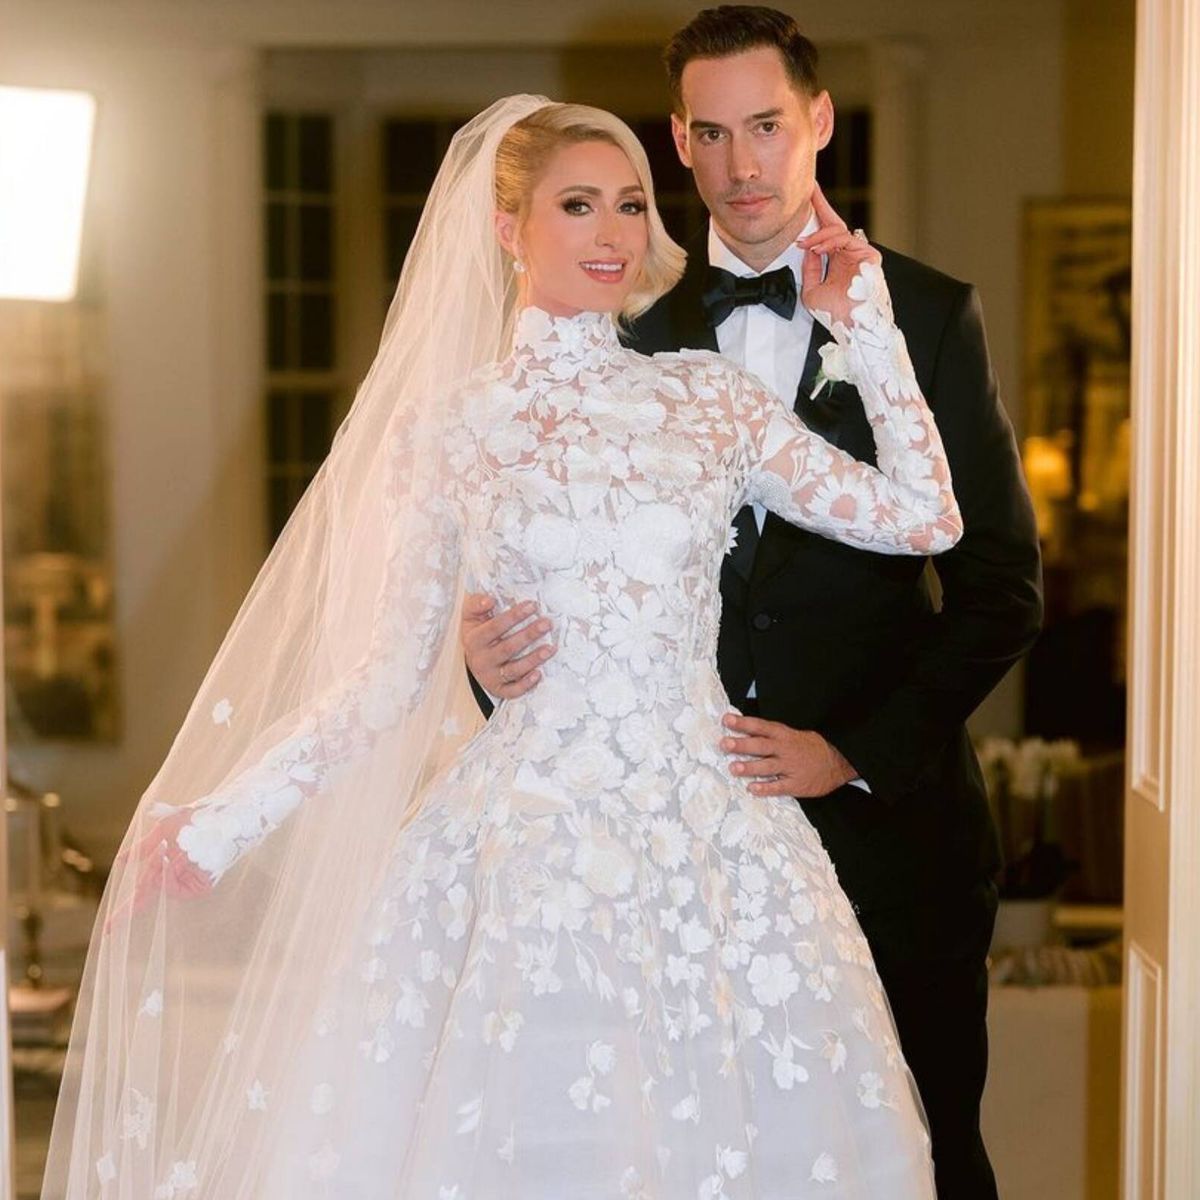 La boda Paris Hilton cifras un después: 7 vestidos, mansión de 60 millones y 250 invitados